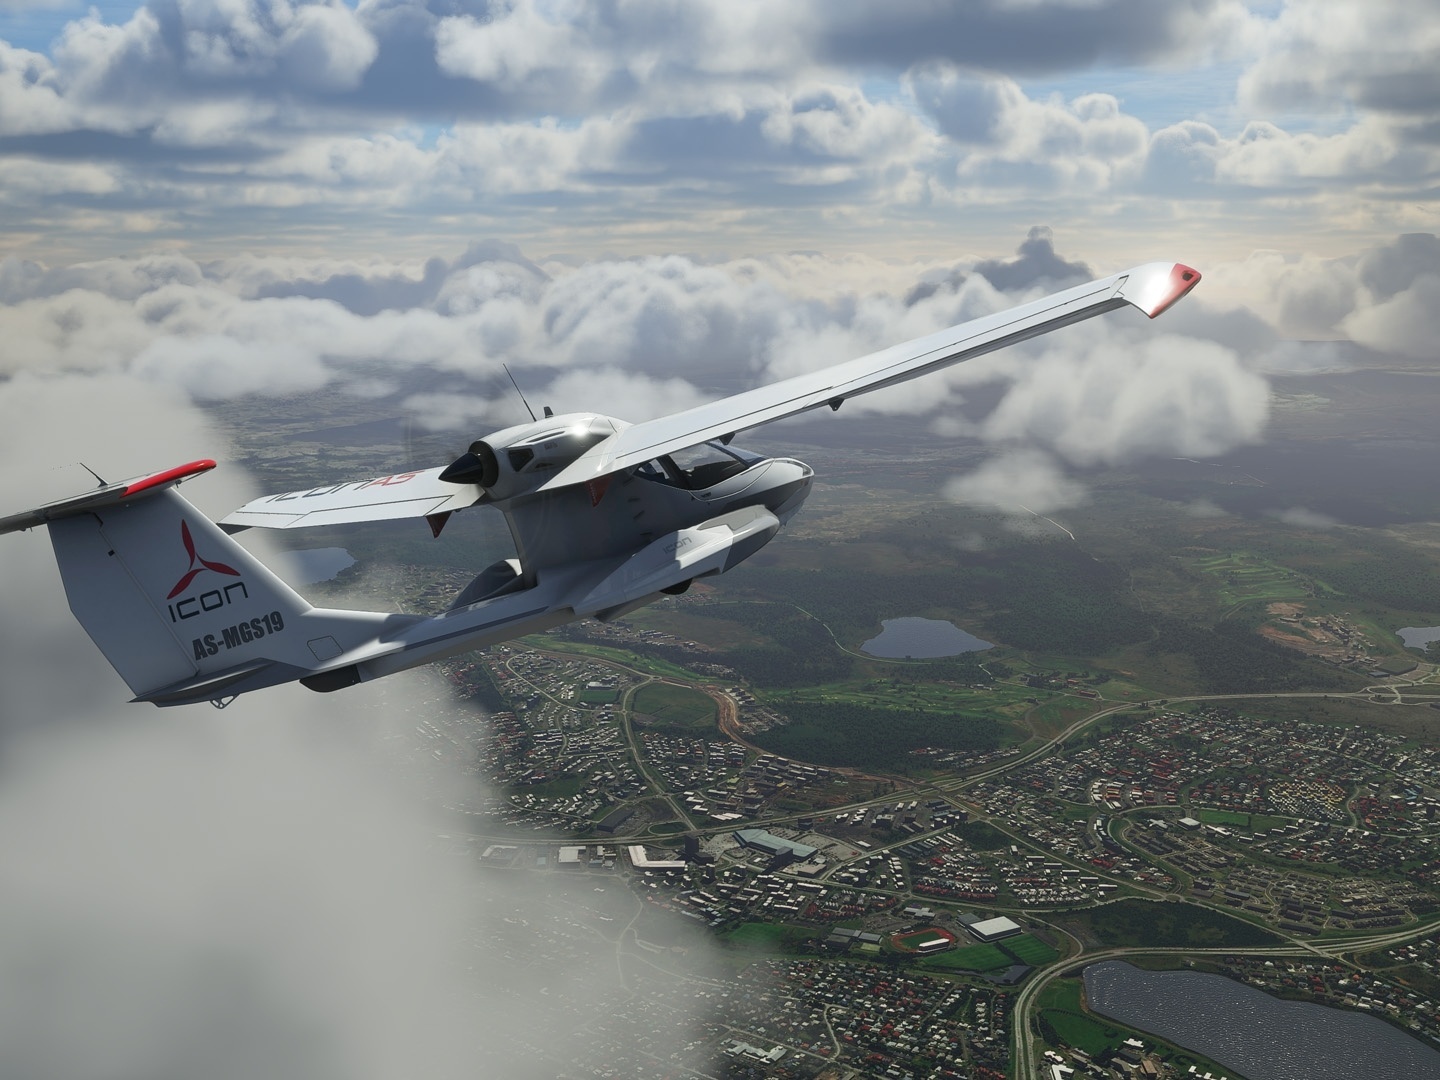 Microsoft Flight Simulator chega para PC dia 18 de agosto a partir